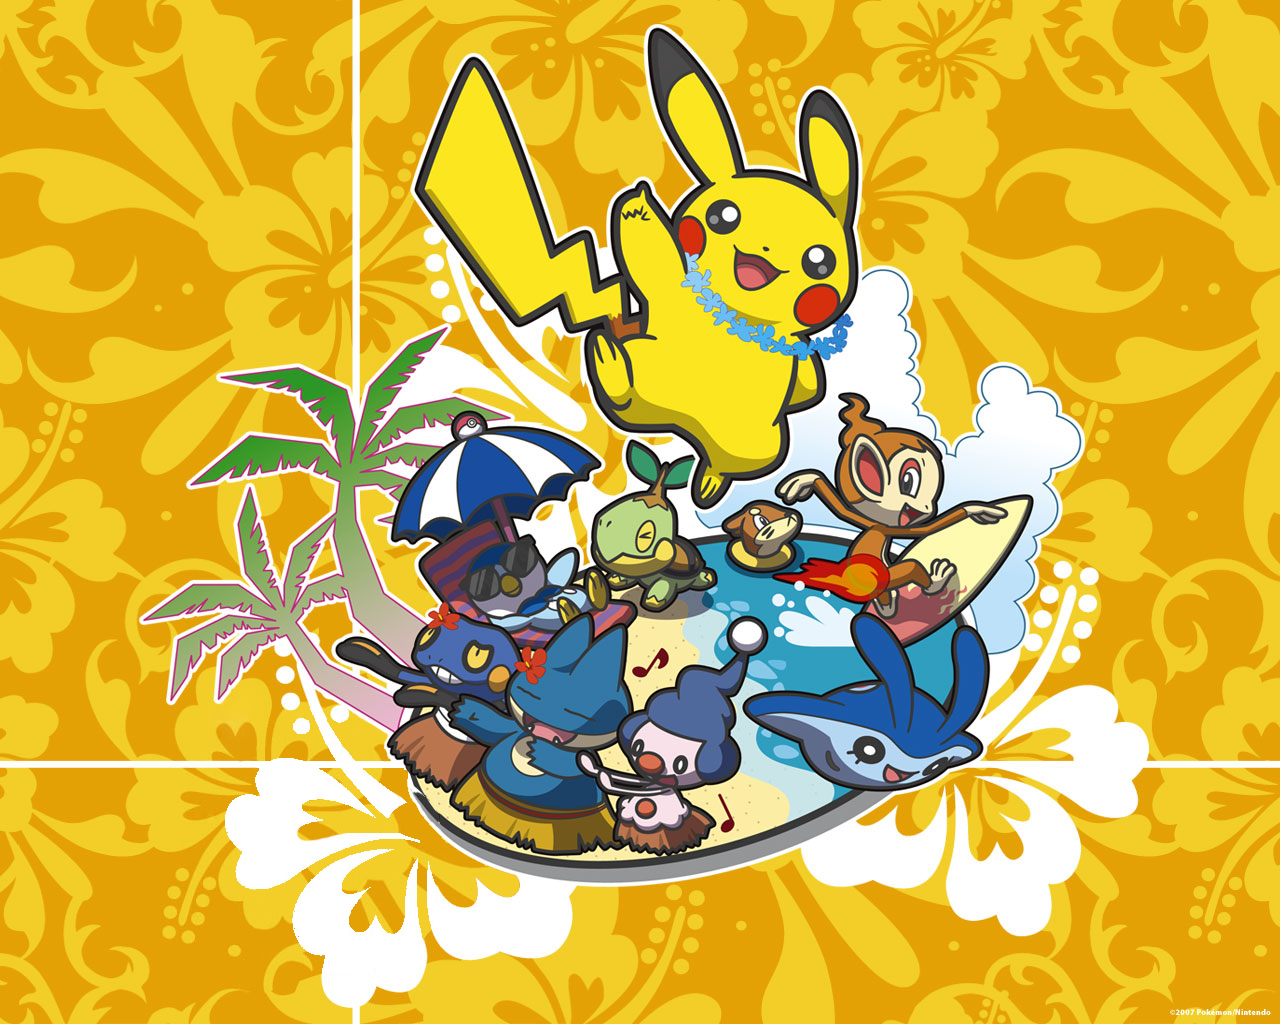 starter pokemon, video game, buizel (pokemon), chimchar (pokémon), croagunk (pokémon), mantyke (pokémon), mime jr (pokémon), munchlax (pokémon), pikachu, piplup (pokémon), turtwig (pokémon), pokémon Full HD